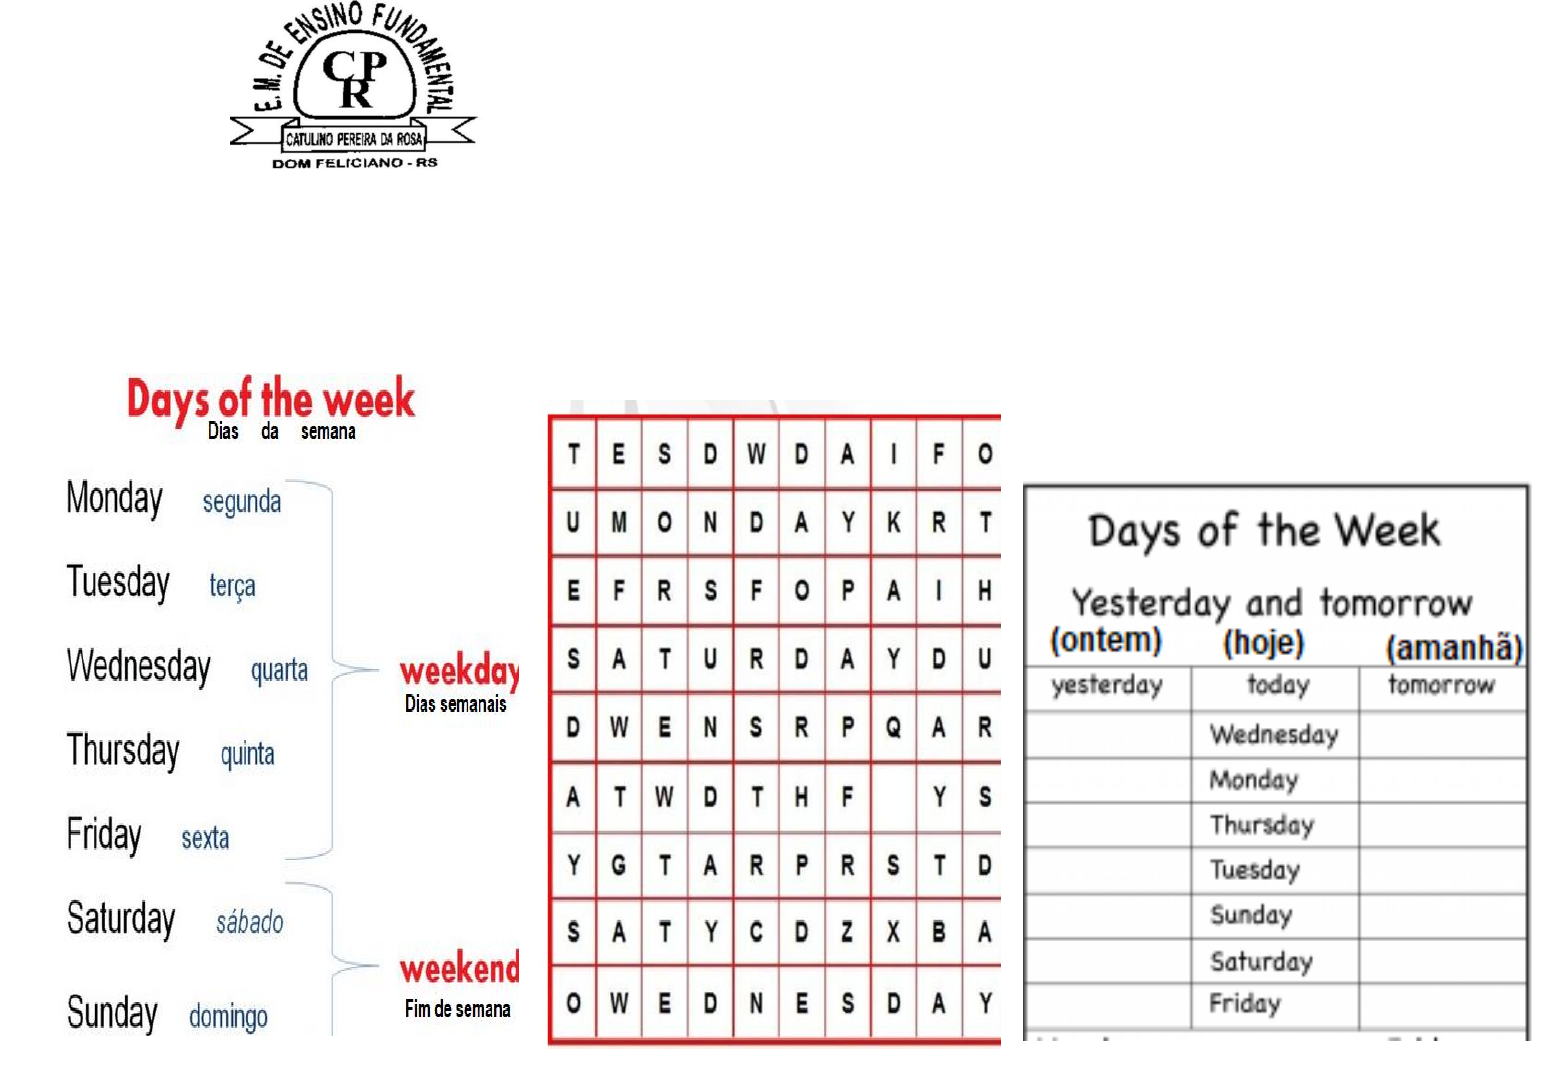 Days of the week: qual a origem dos dias da semana na língua inglesa